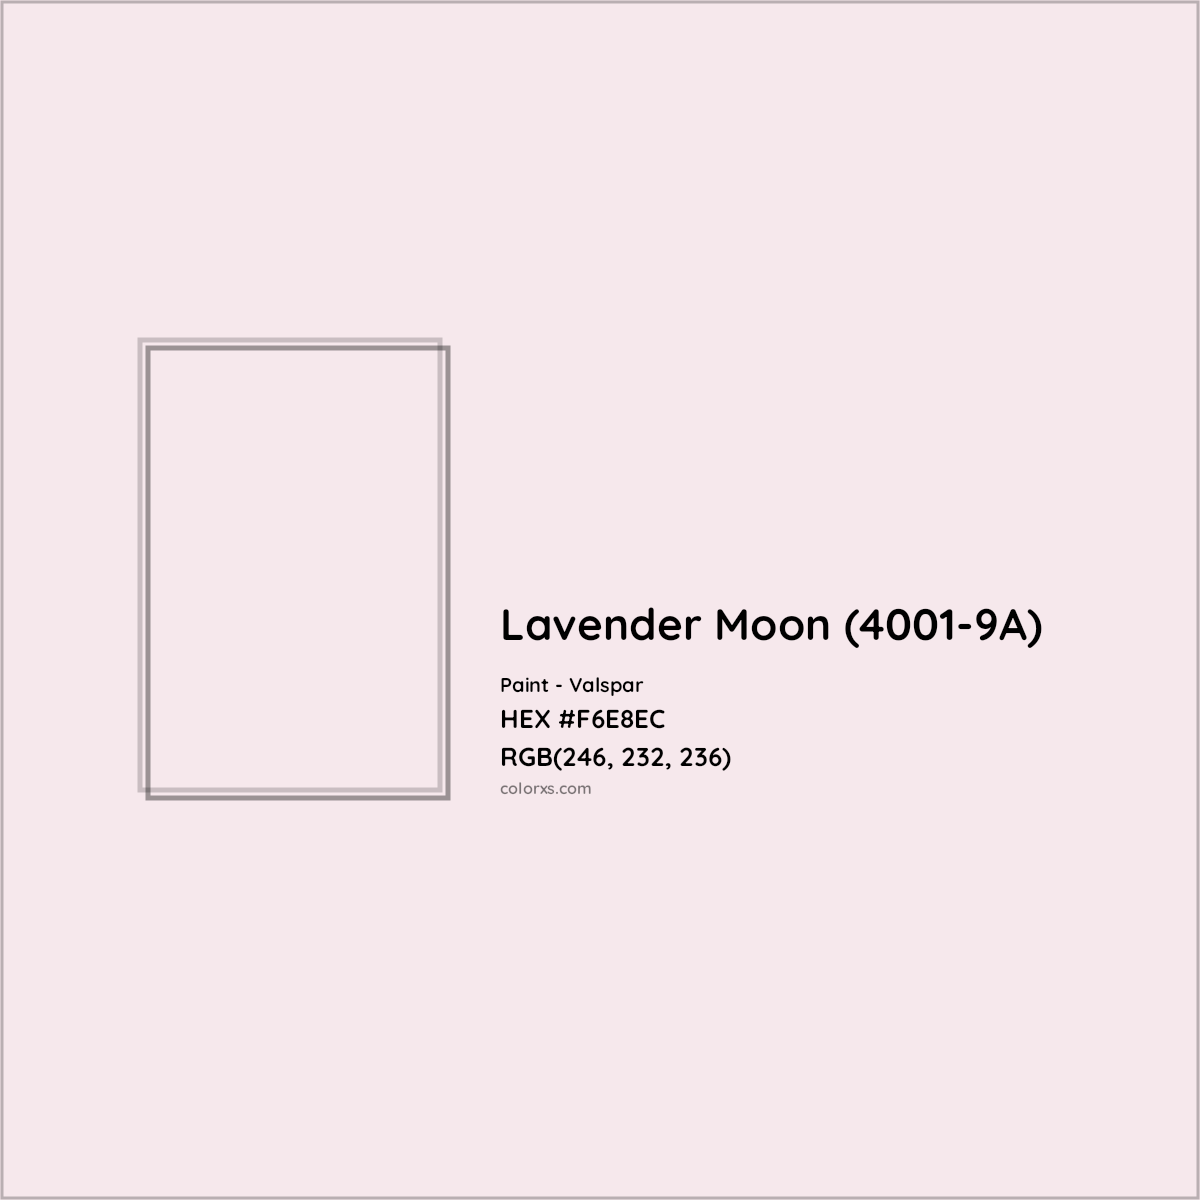 HEX #F6E8EC Lavender Moon (4001-9A) Paint Valspar - Color Code